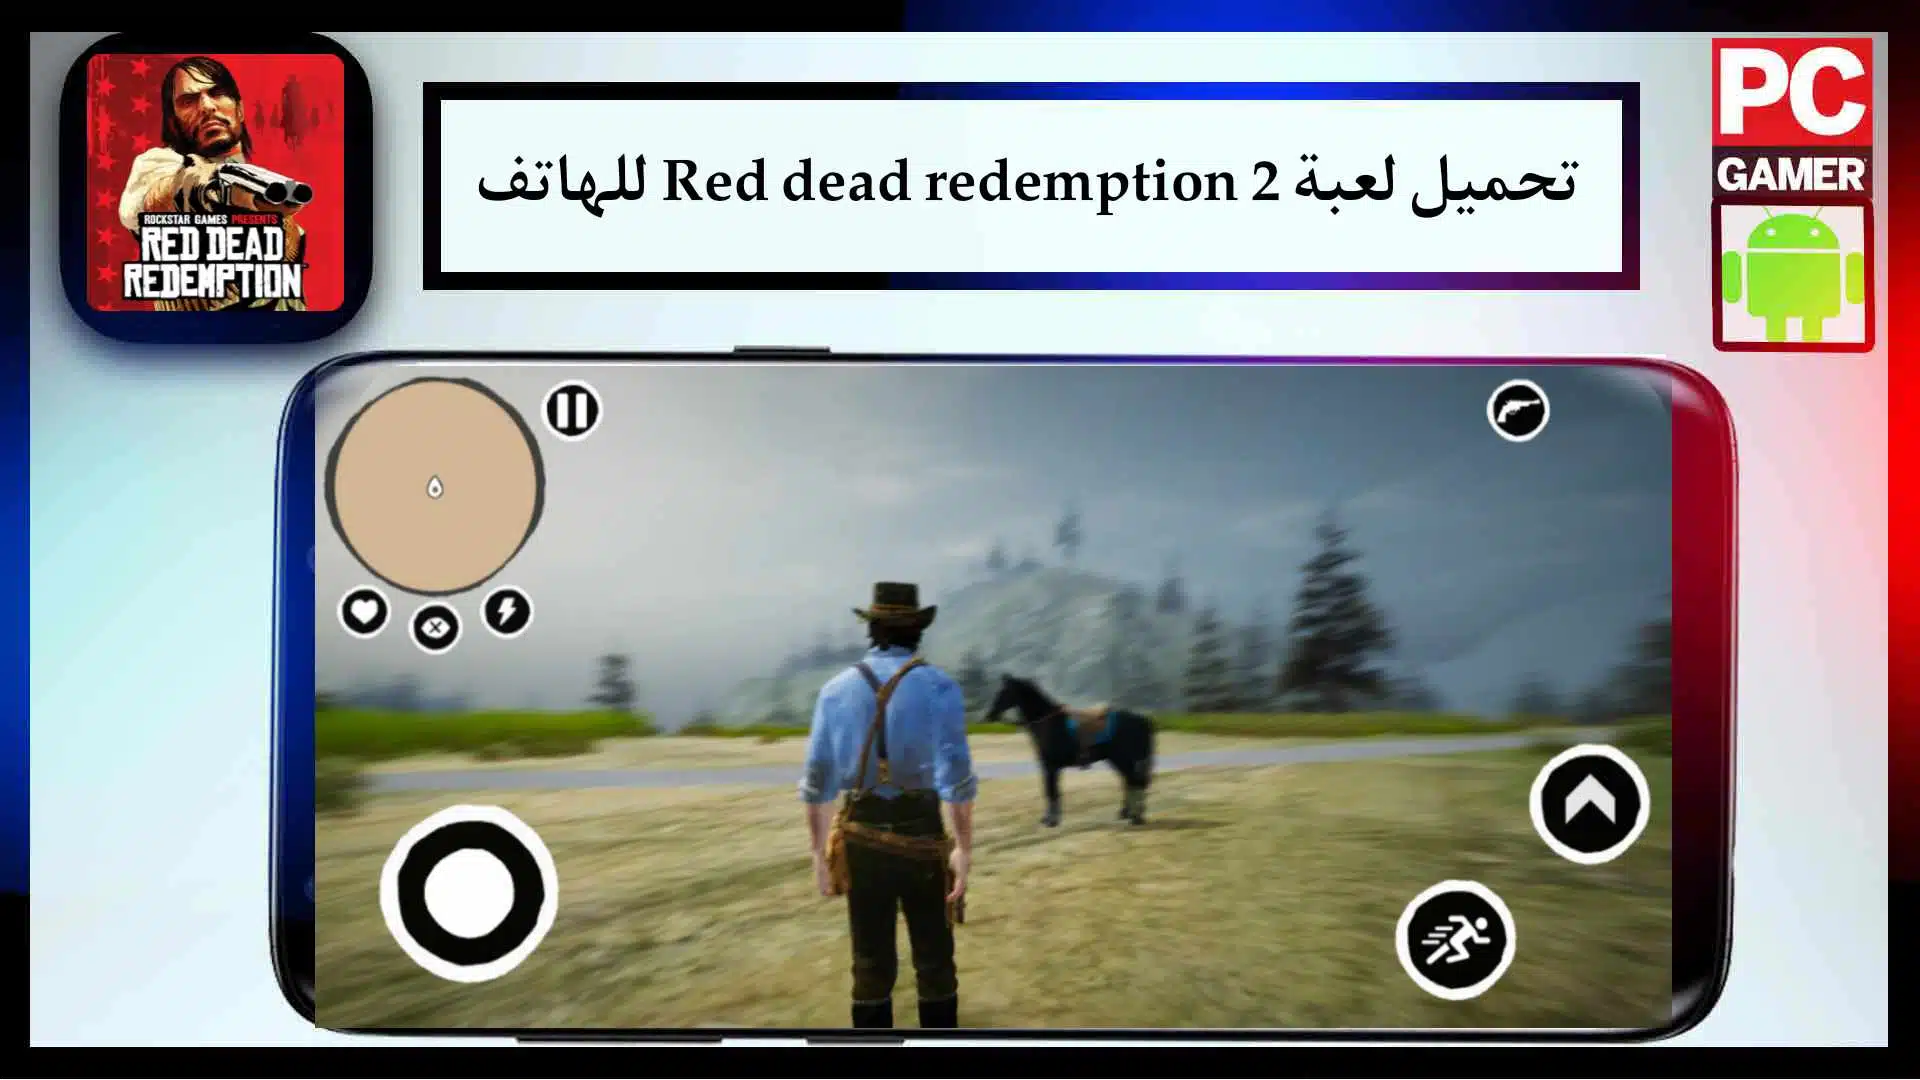 تحميل لعبة ريد ديد ريدمبشن 2 على الهاتف الاصلية بحجم صغير من ميديا فاير مجانا